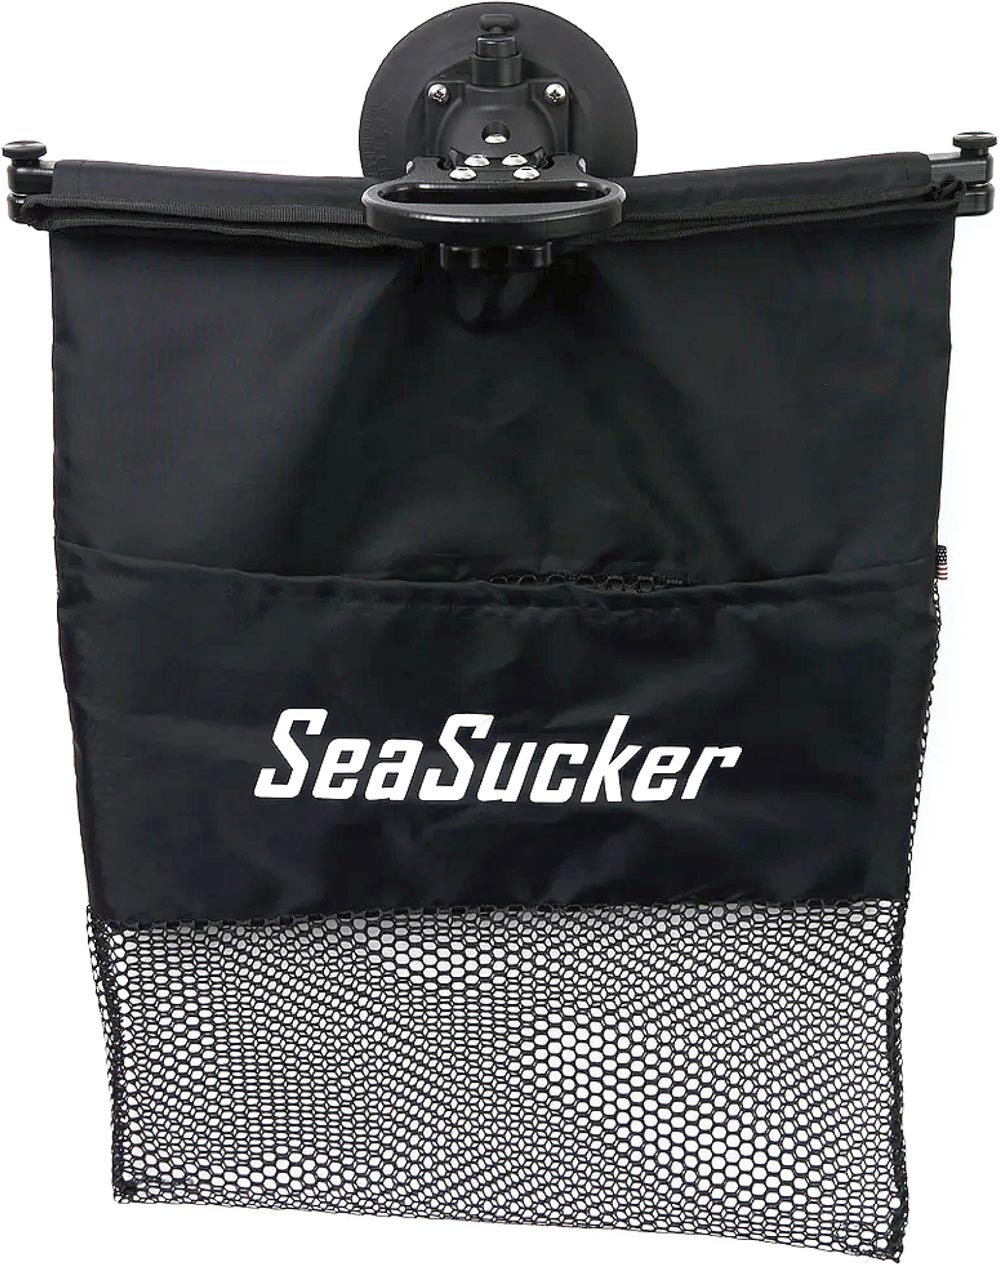 Basking Bag from SeaSucker